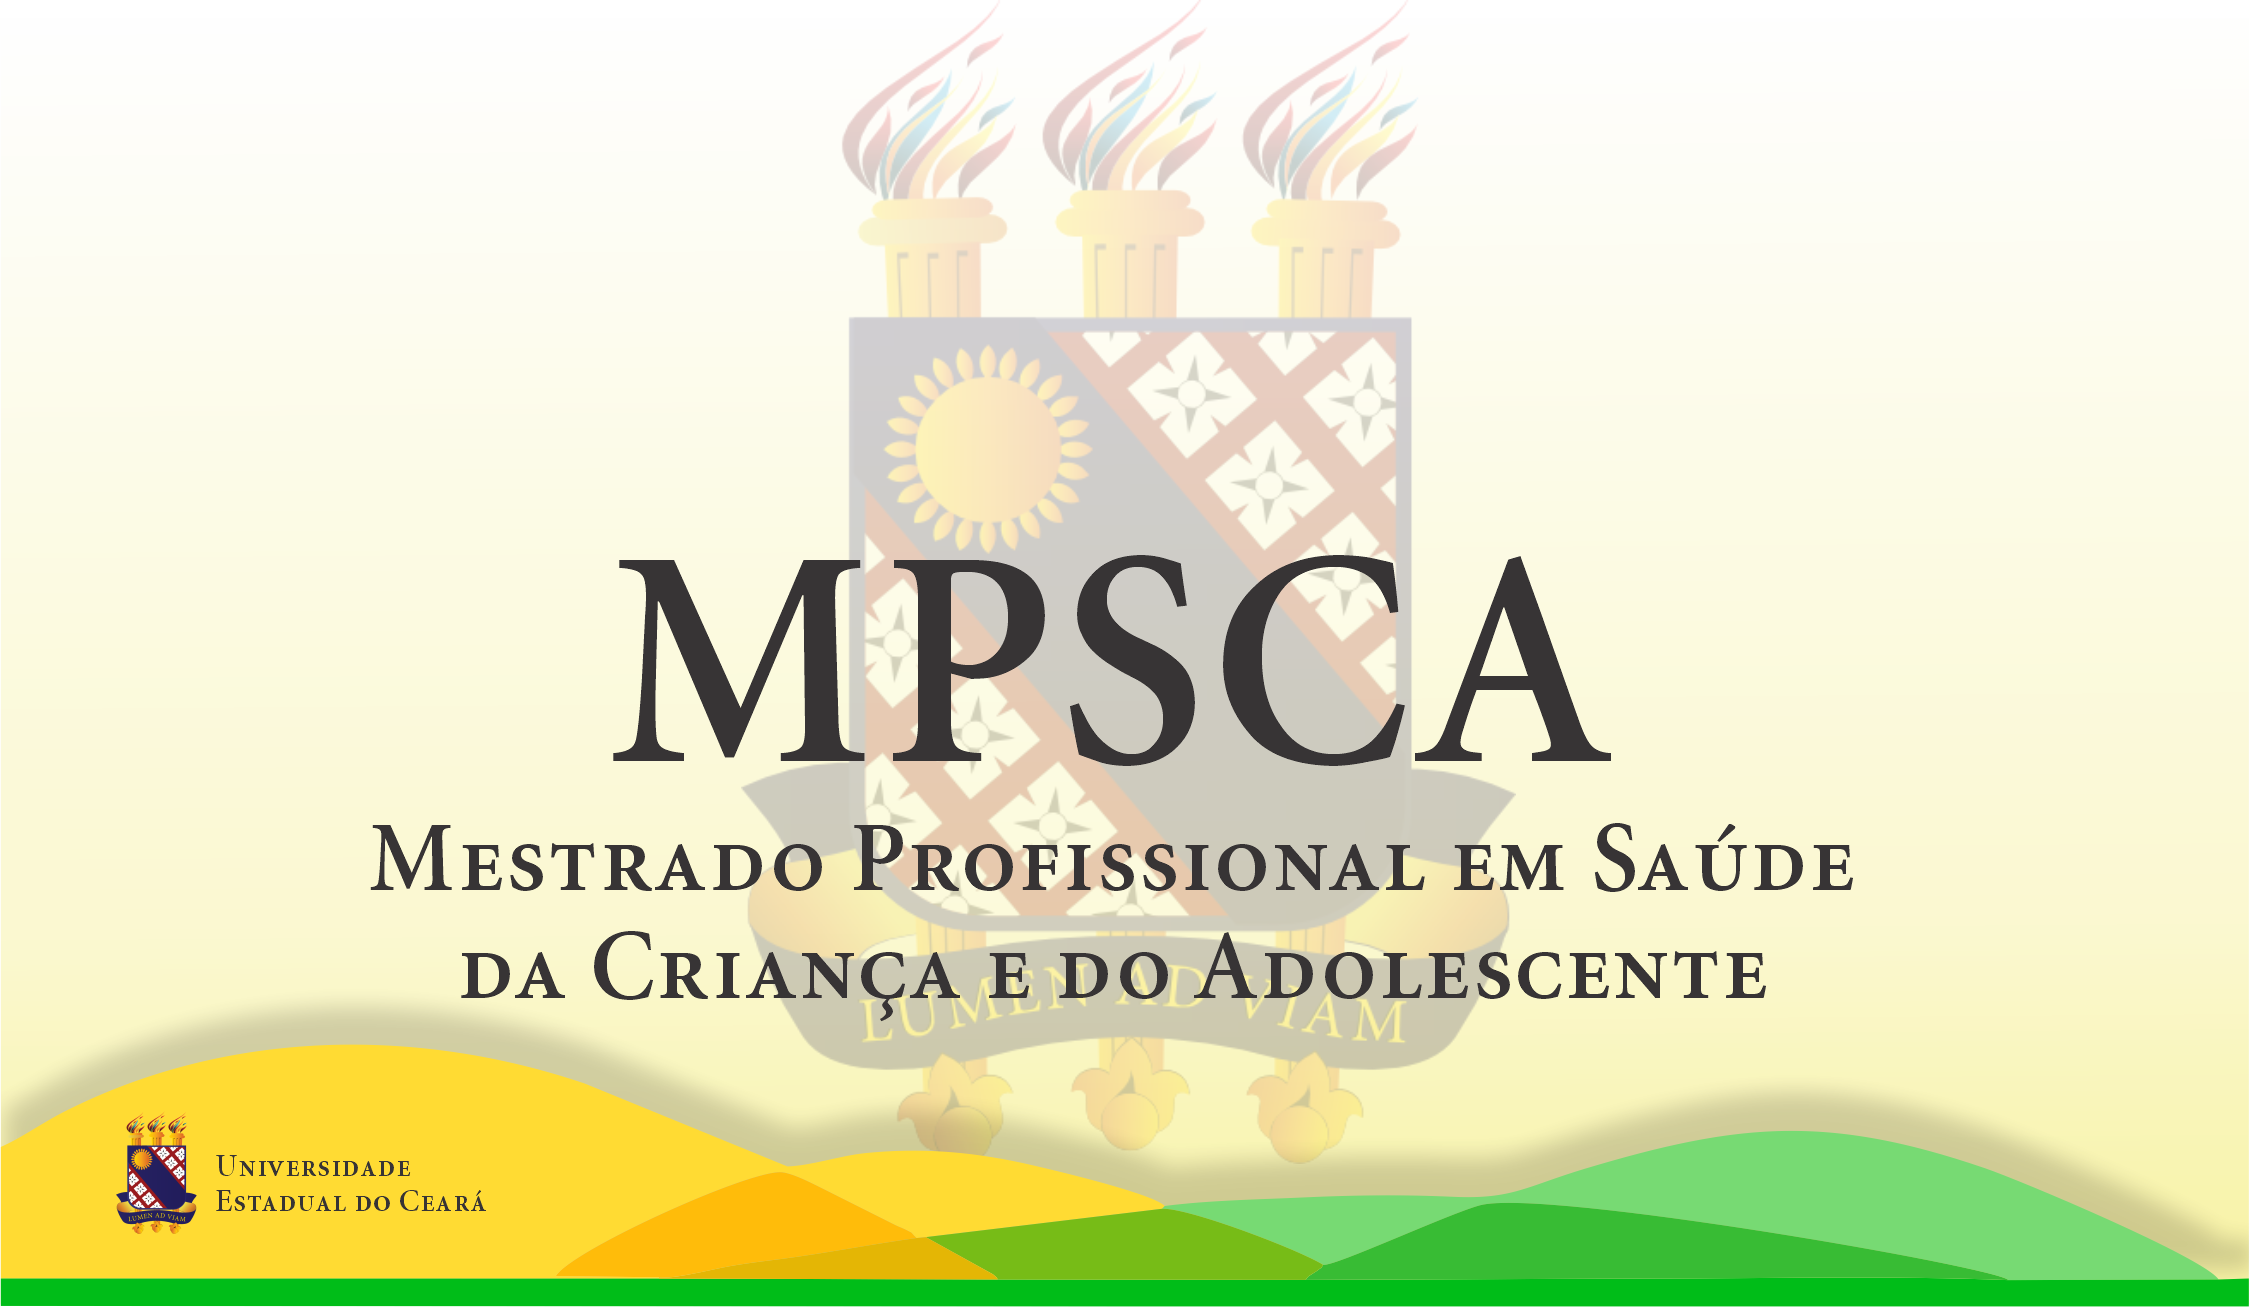 MPSCA – Mestrado Profissional em Saúde da Criança e do Adolescente